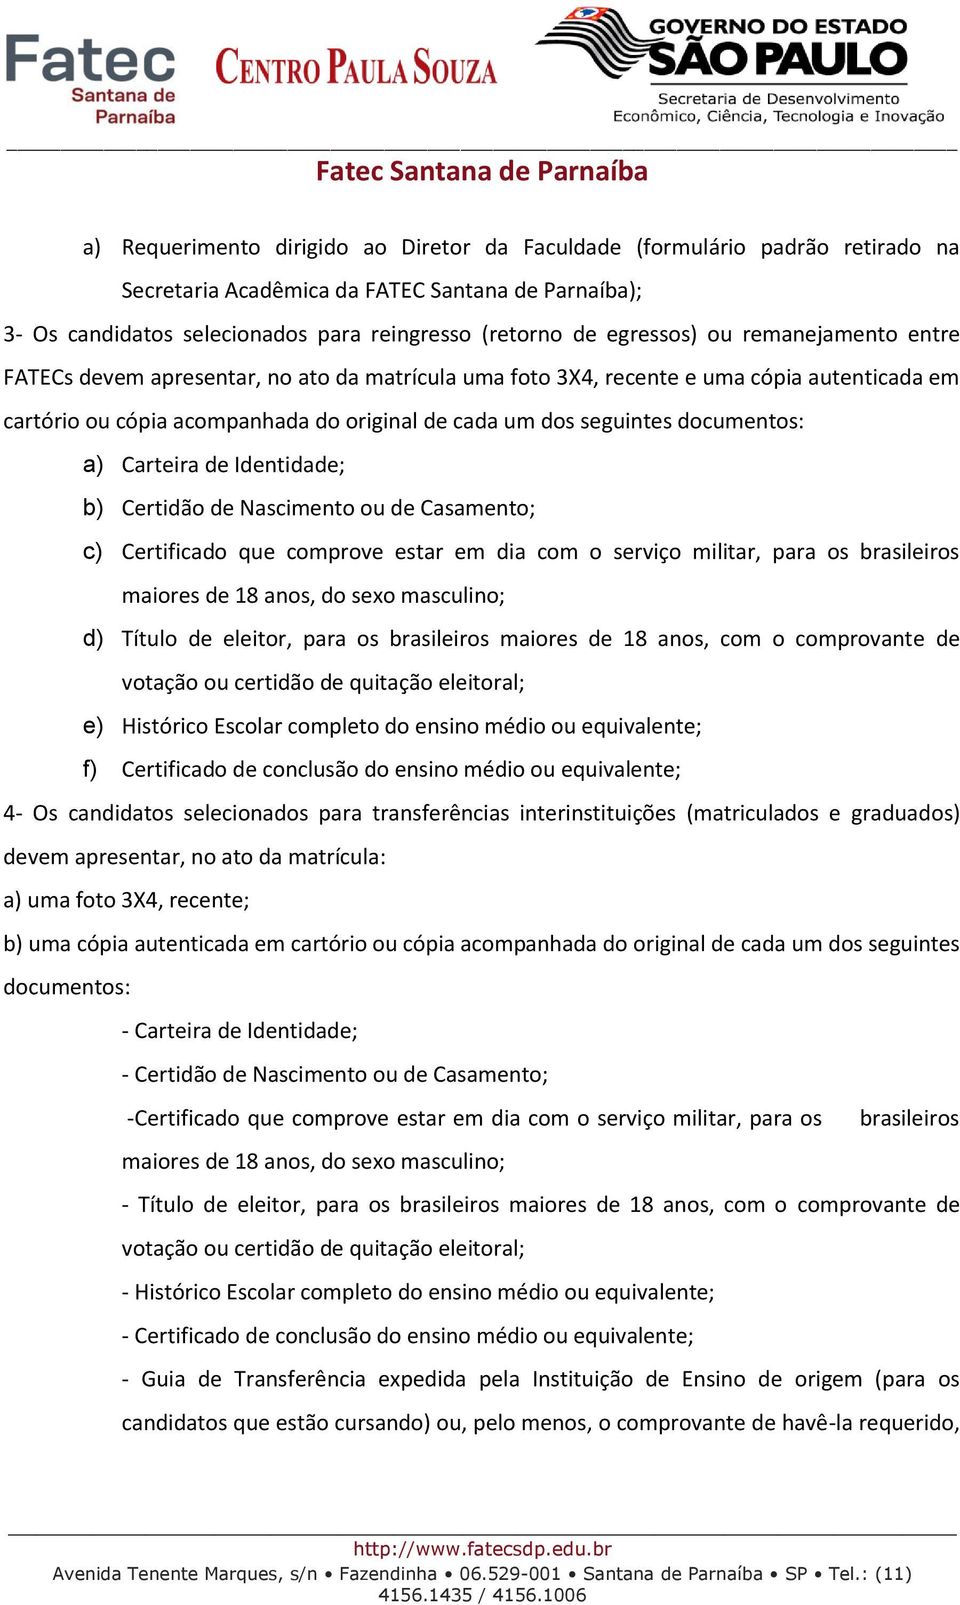 Carteira de Identidade; b) Certidão de Nascimento ou de Casamento; c) Certificado que comprove estar em dia com o serviço militar, para os brasileiros maiores de 18 anos, do sexo masculino; d) Título